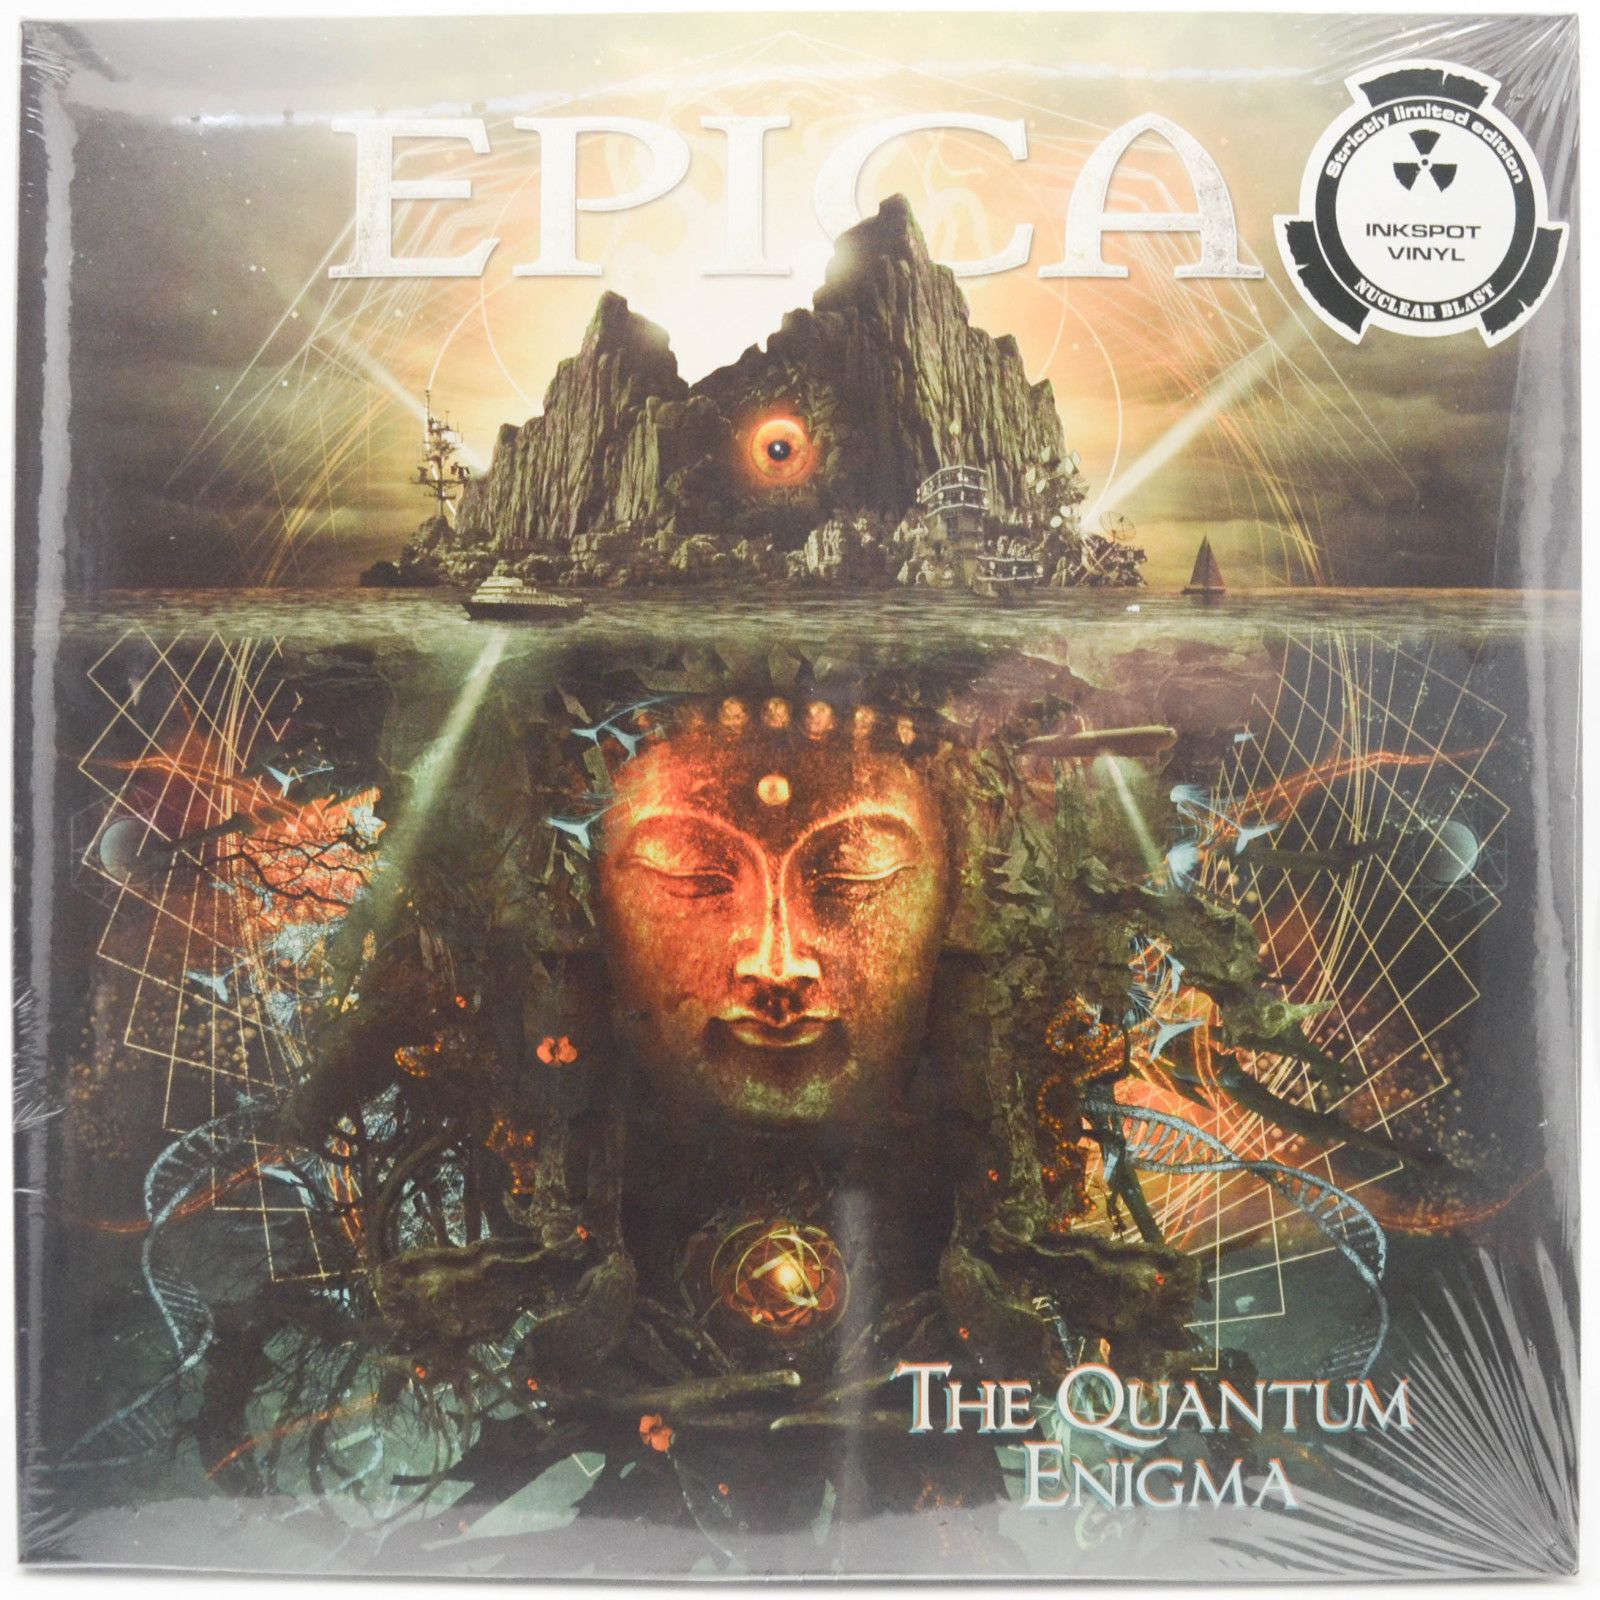 Epica — The Quantum Enigma (2LP), 2014